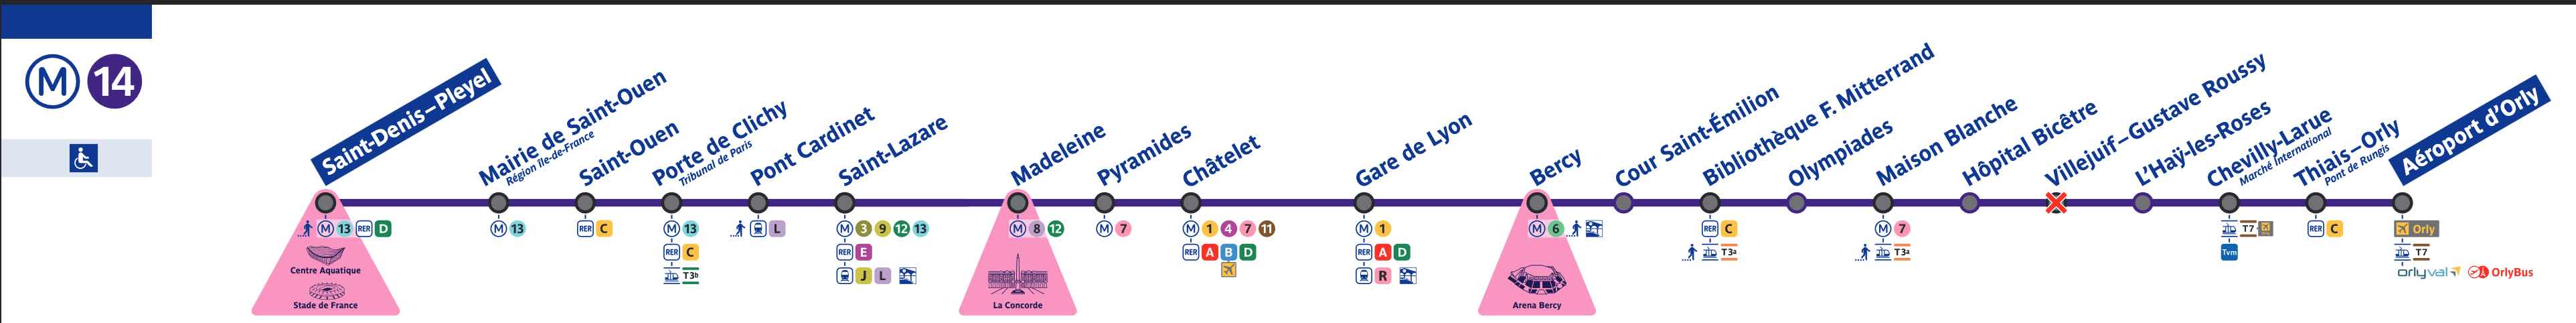 Metro 14 line map